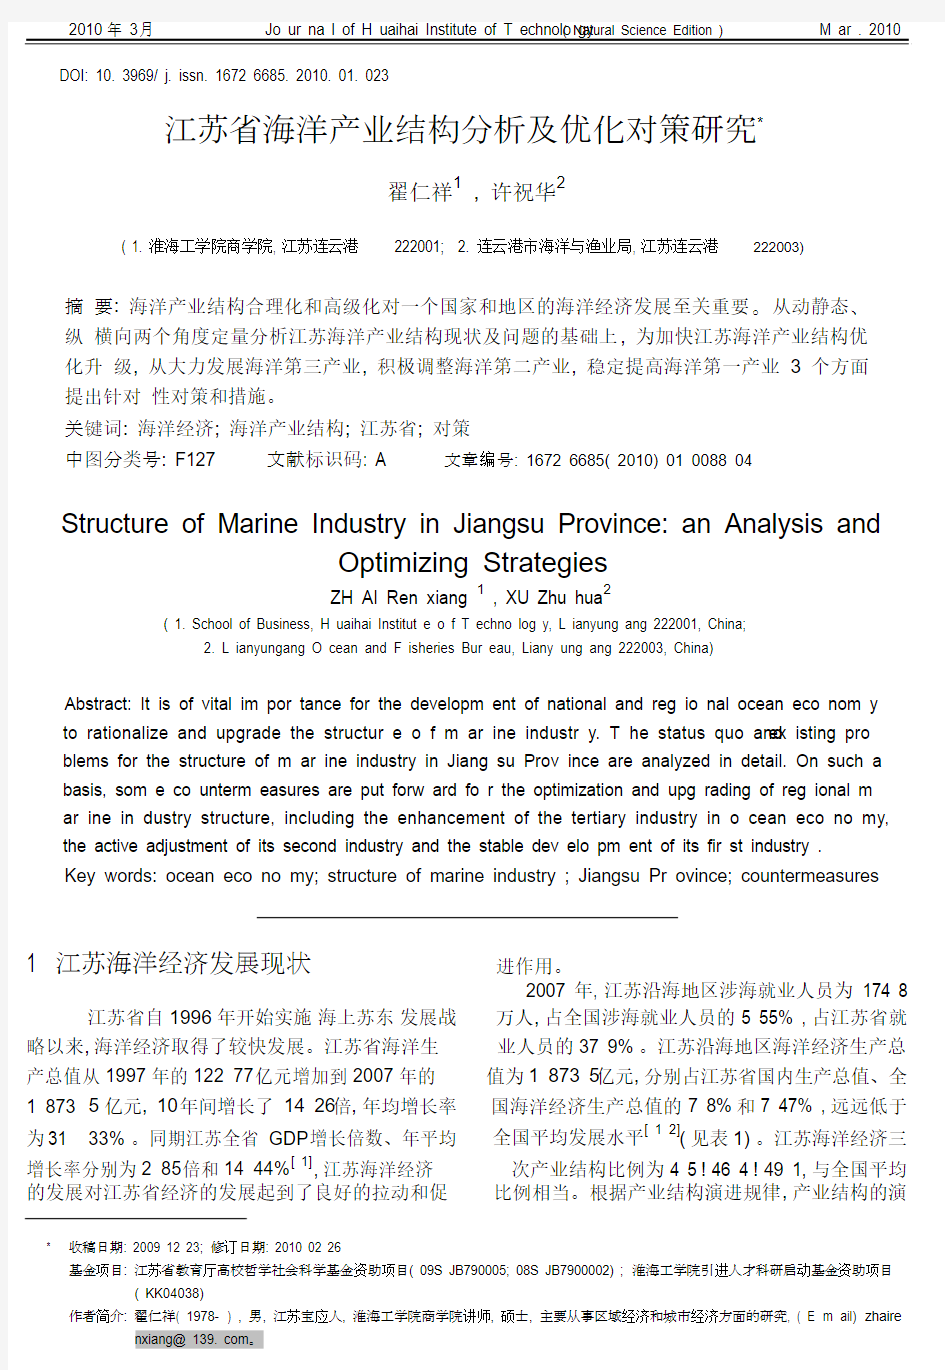 江苏省海洋产业结构分析.pdf